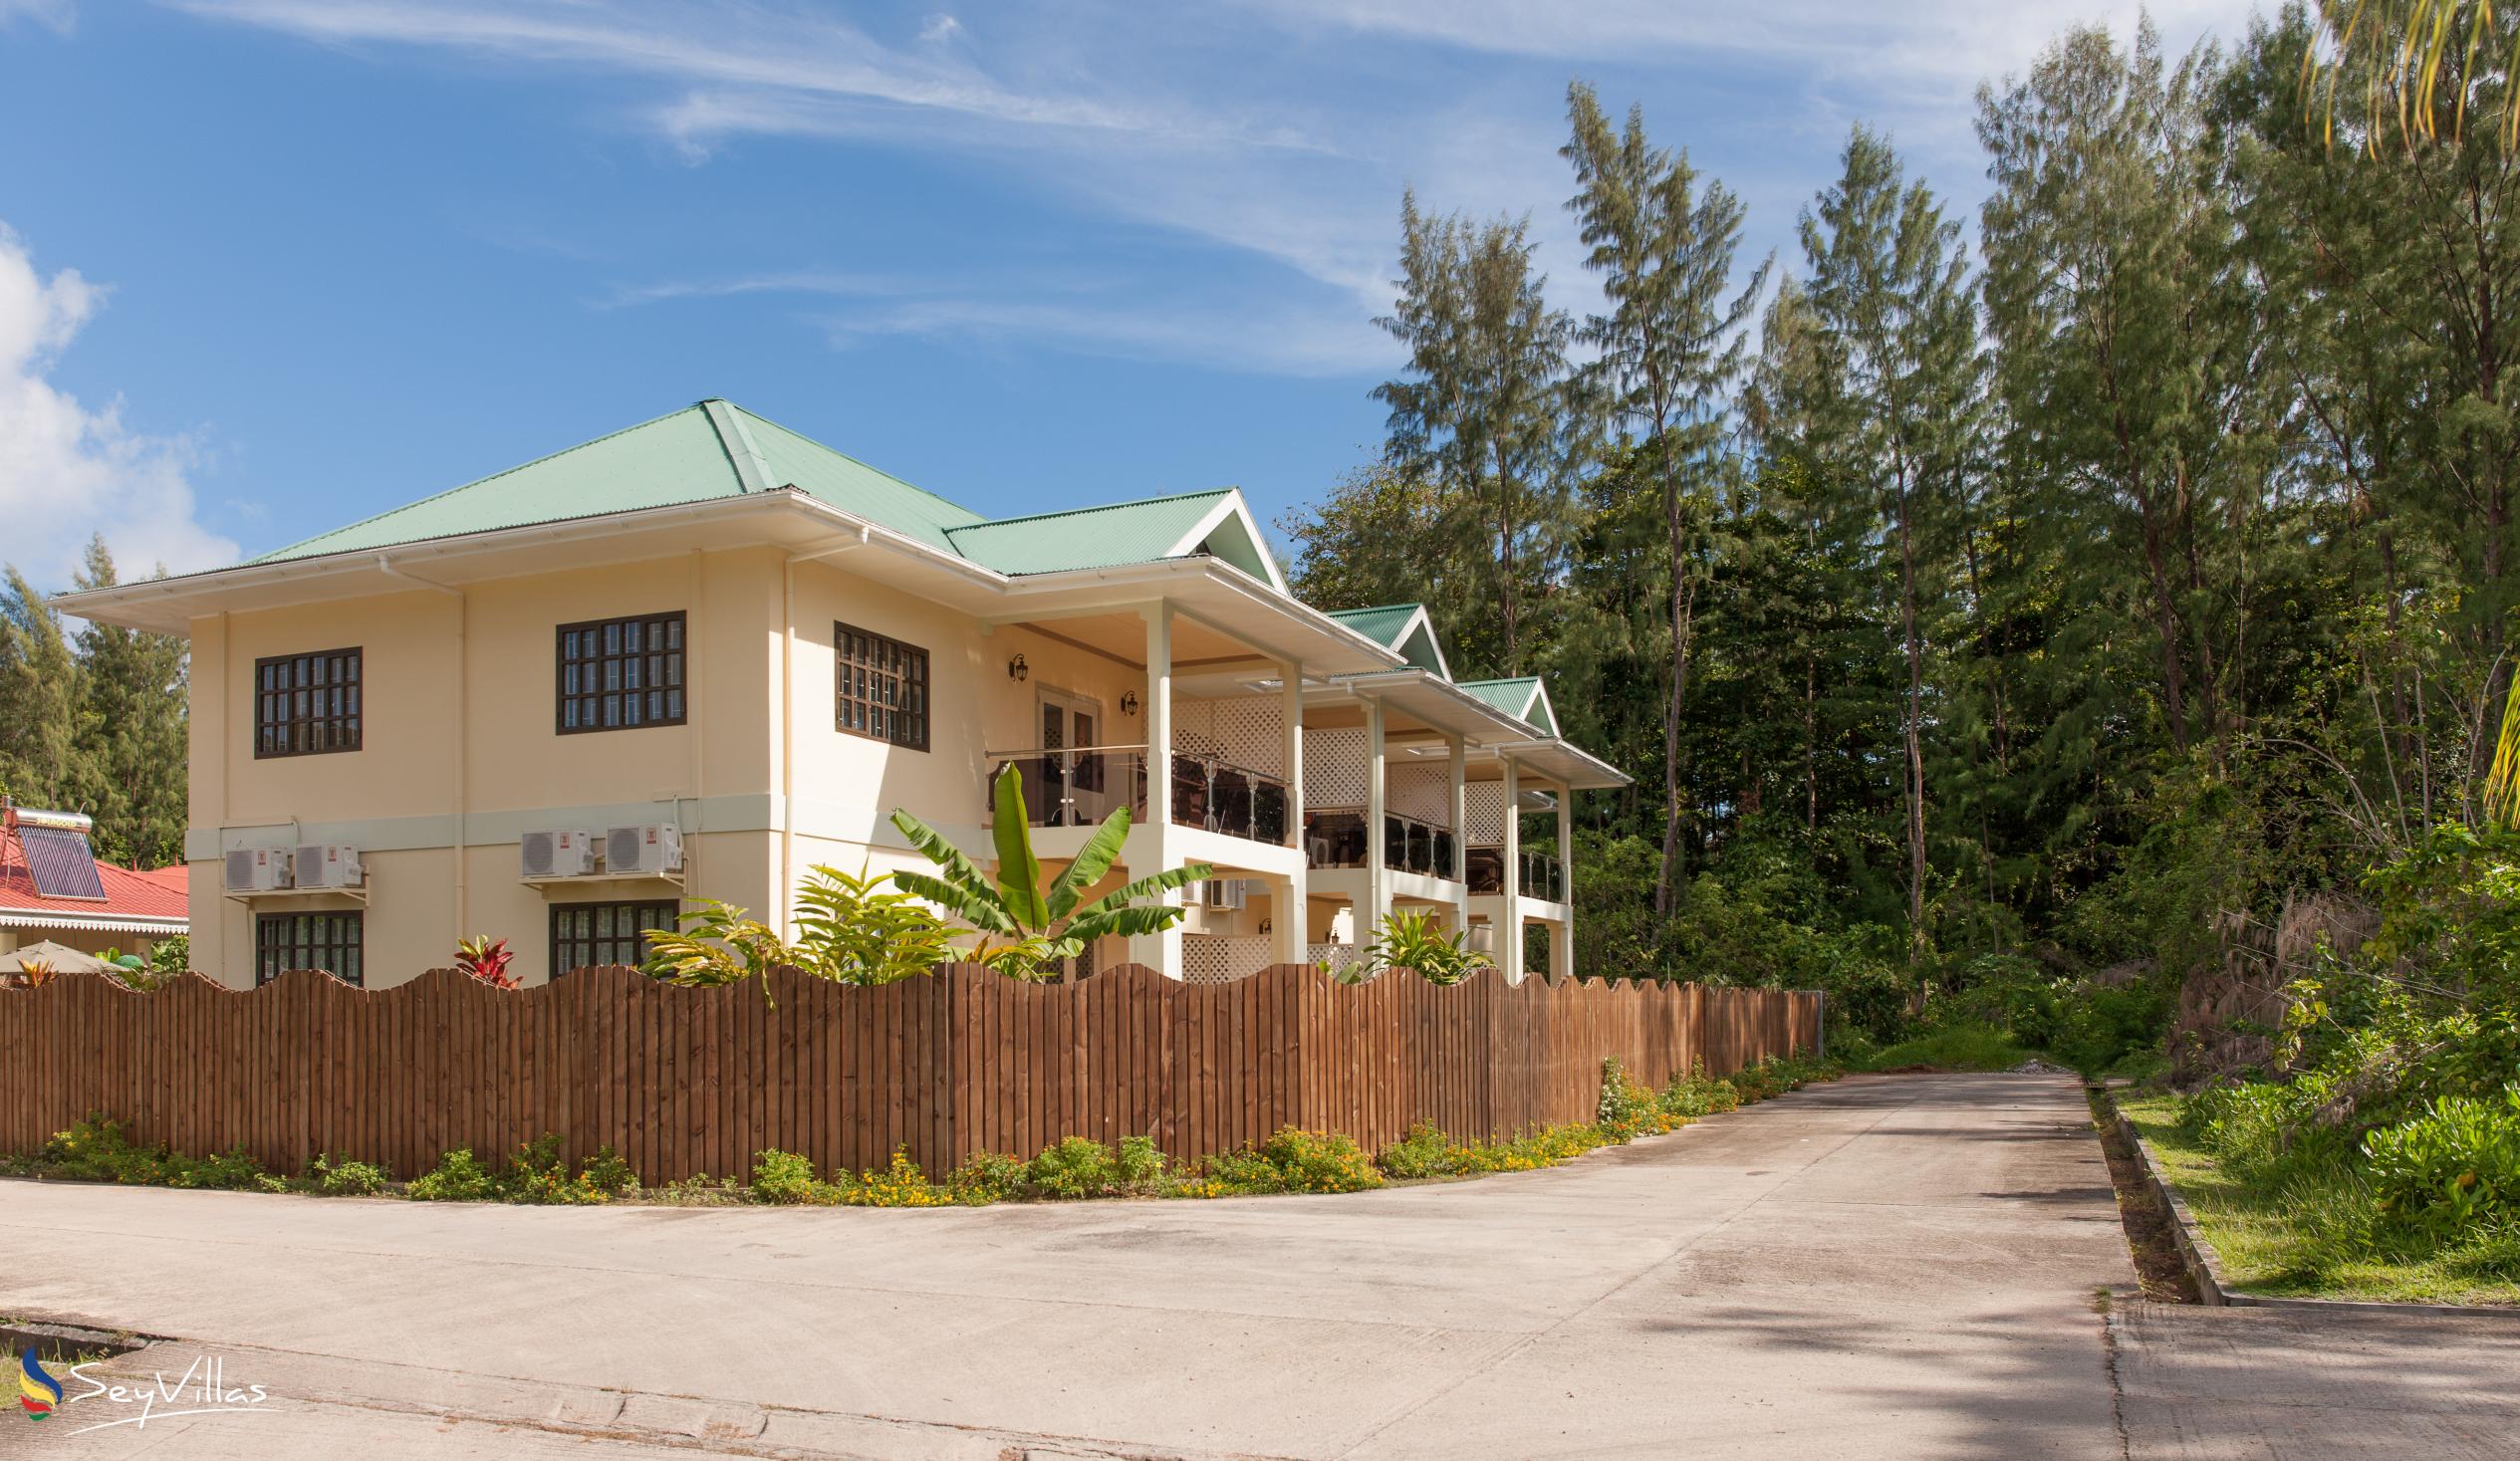 Foto 64: Chez Bea Villa - Posizione - Praslin (Seychelles)